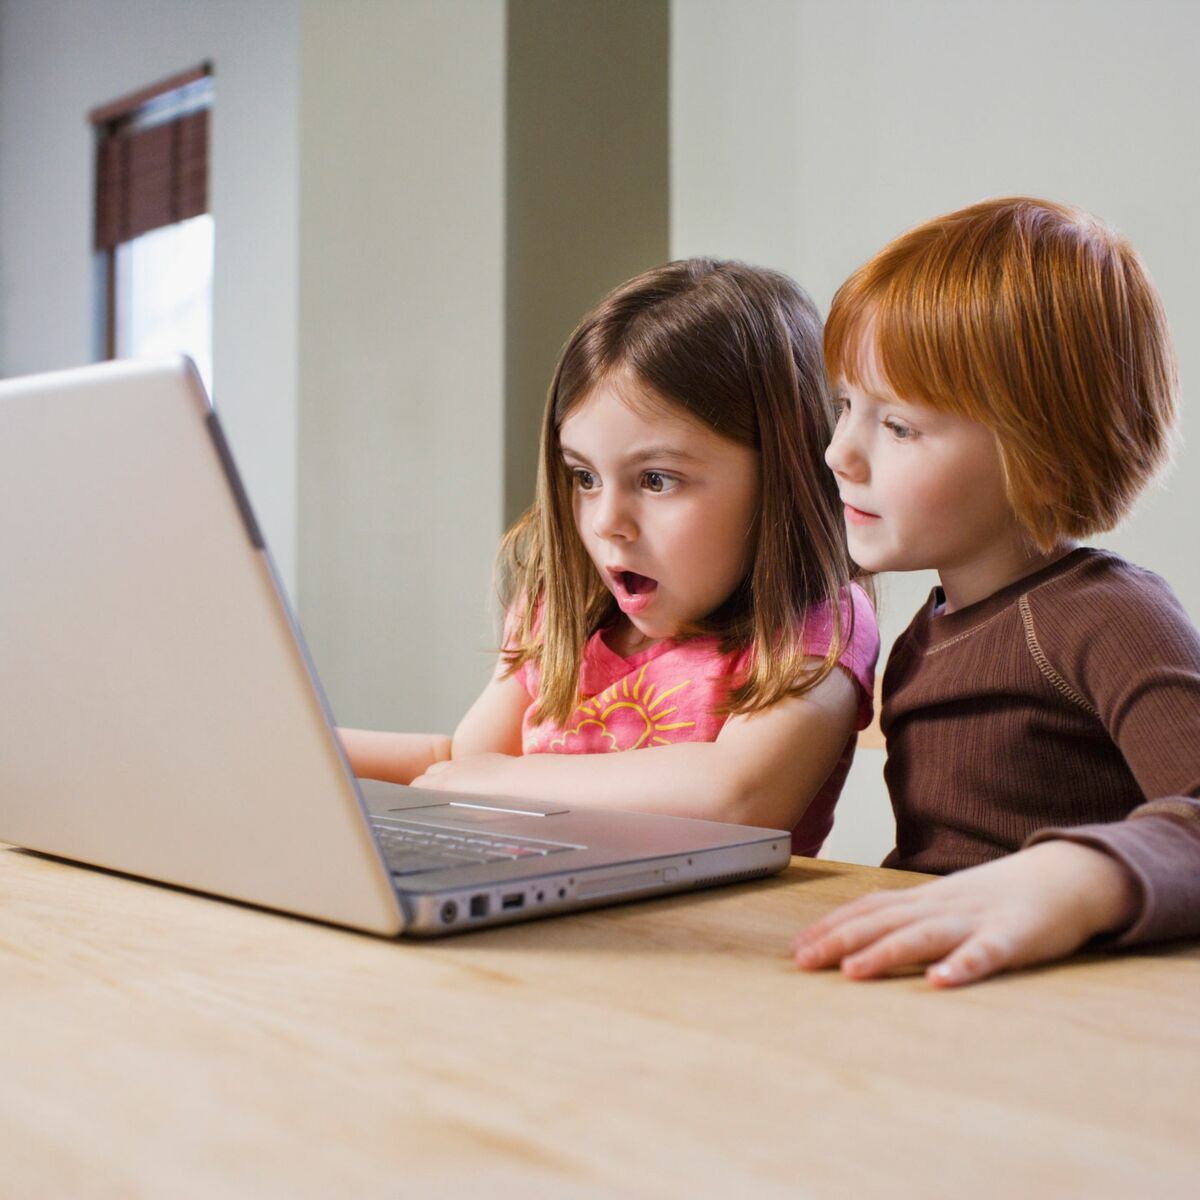 Protégeons nos enfants des écrans ! : 10 conseils du groupe